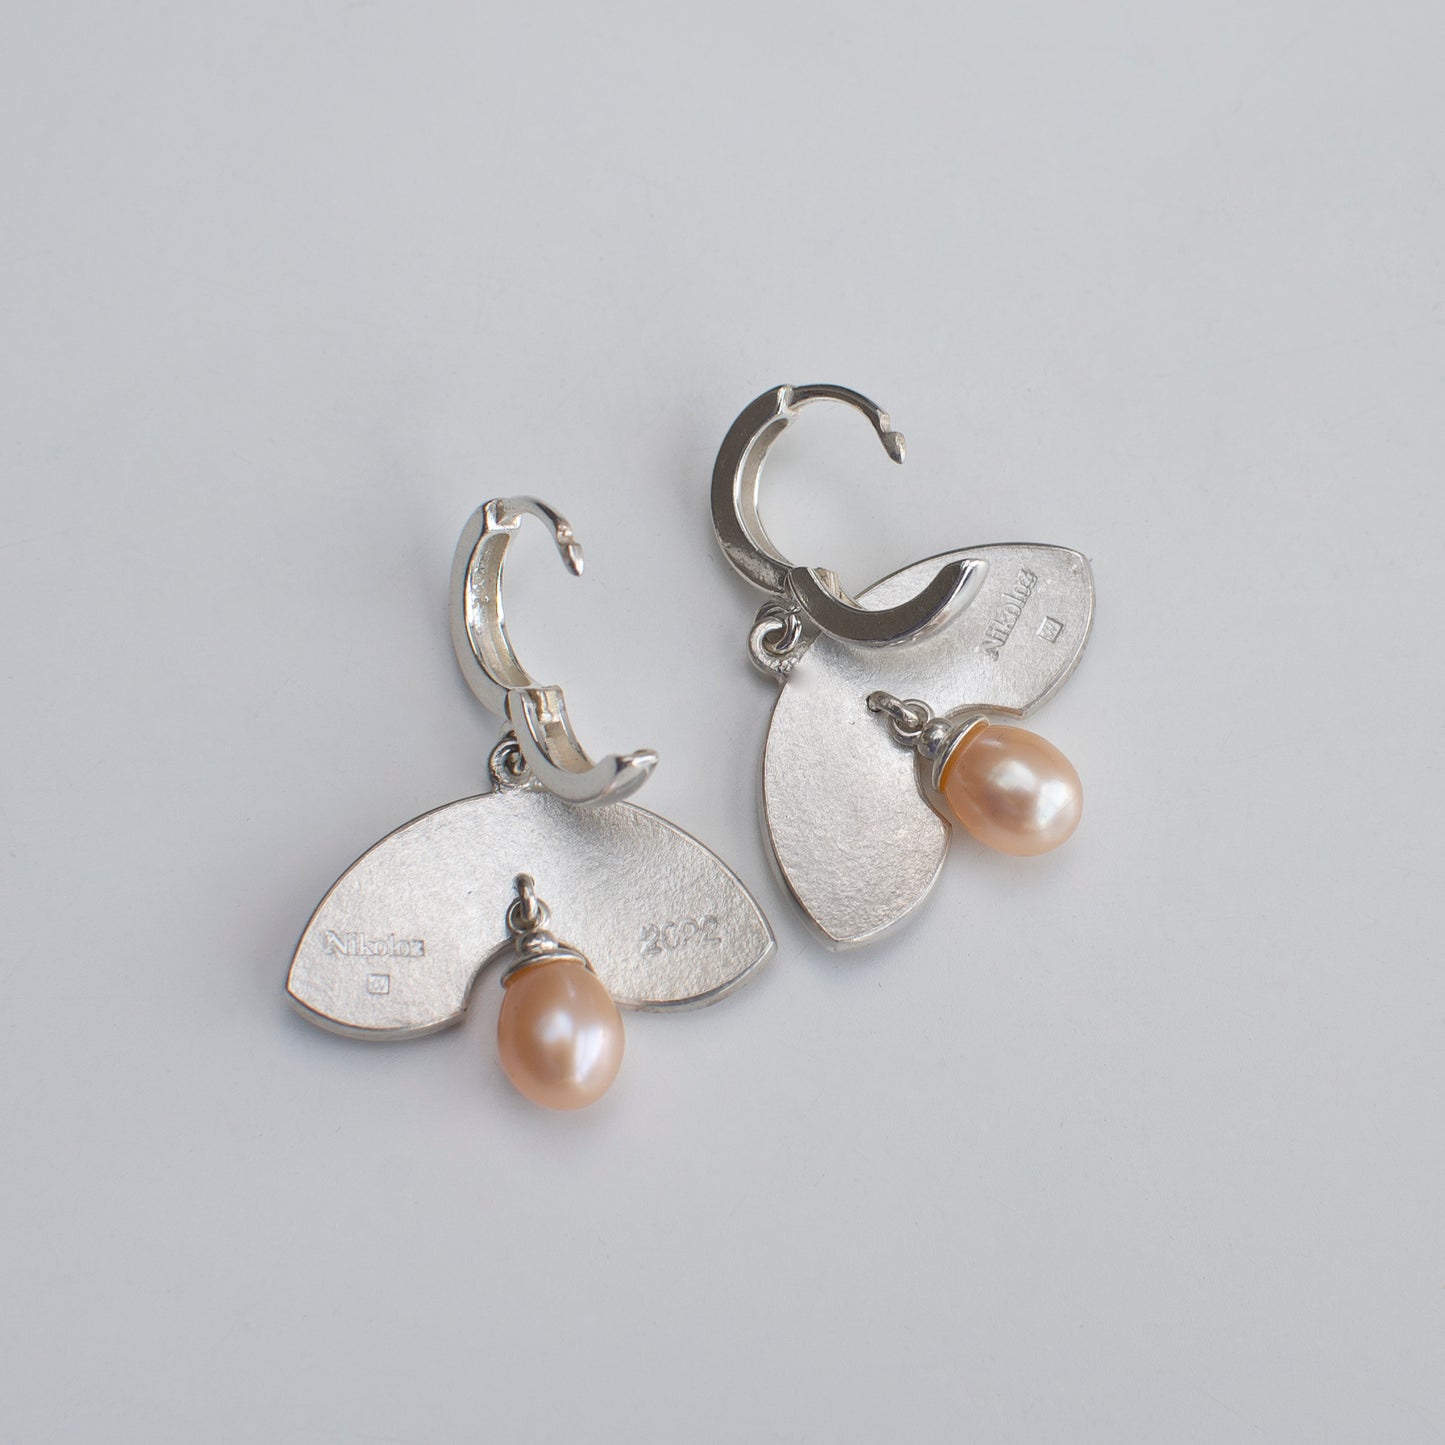 Leaves Shaped Earrings, Cloisonne Enamel Earrings With Labradorite